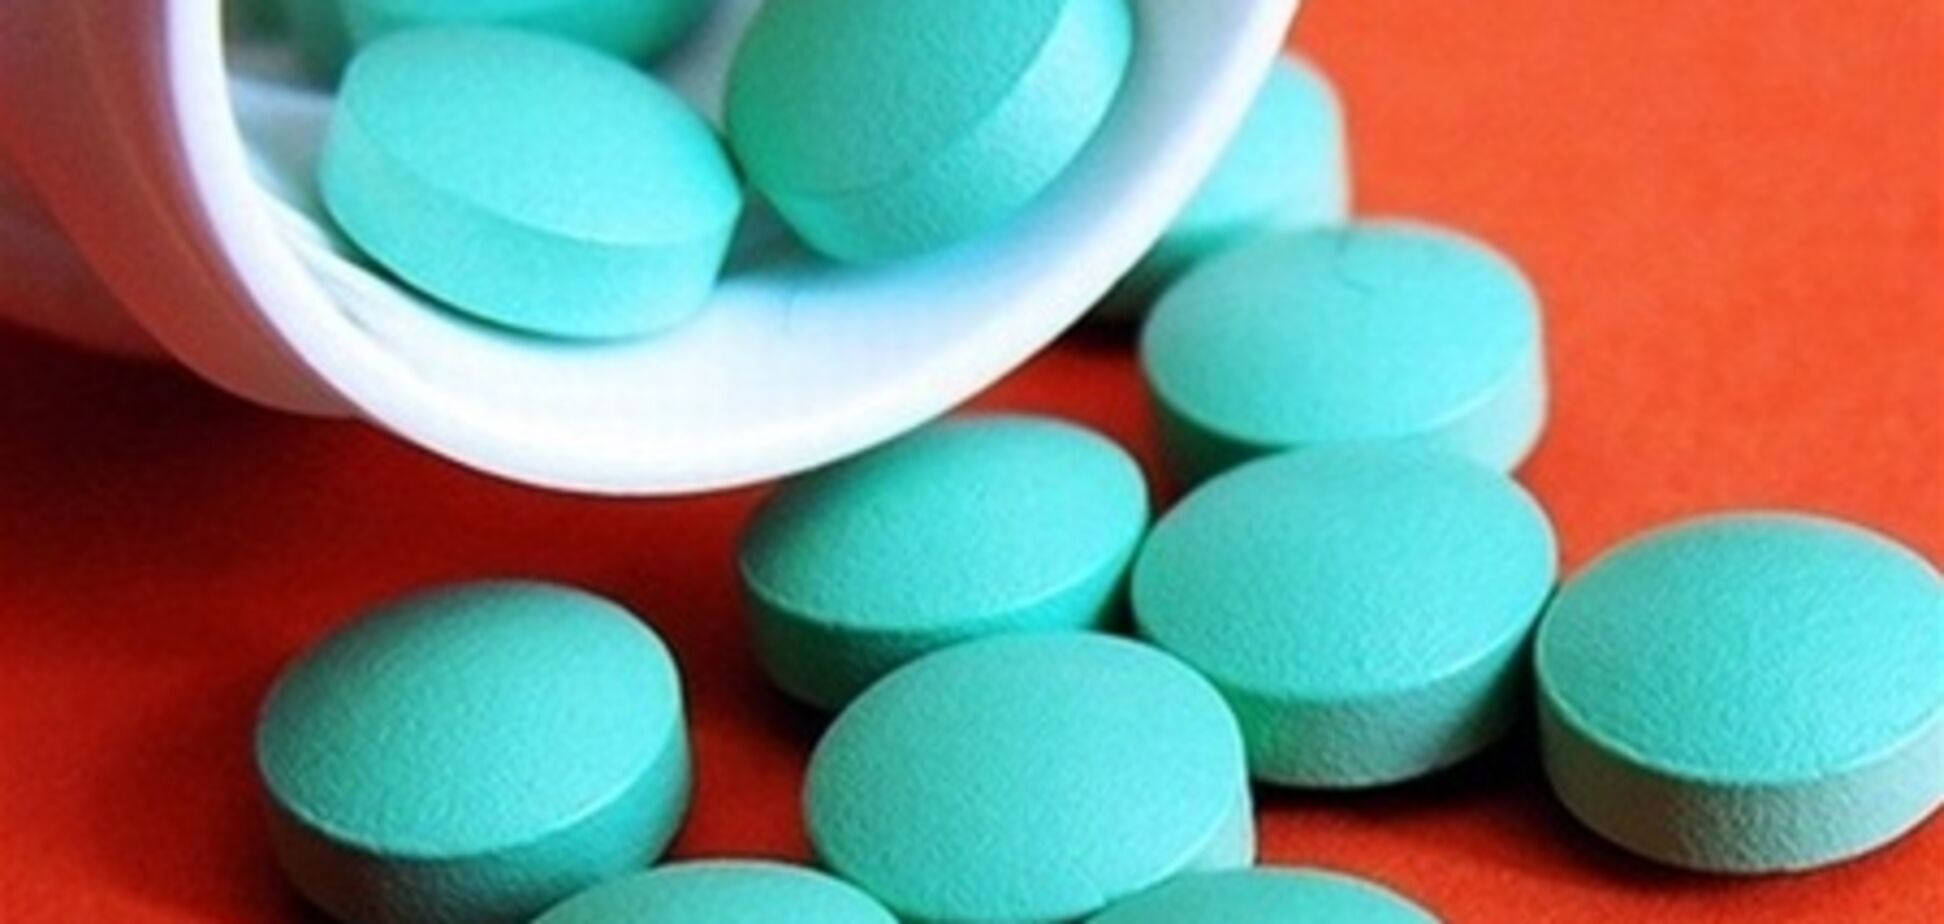 У Маріупольському порту у корейця виявили 600 психотропних таблеток